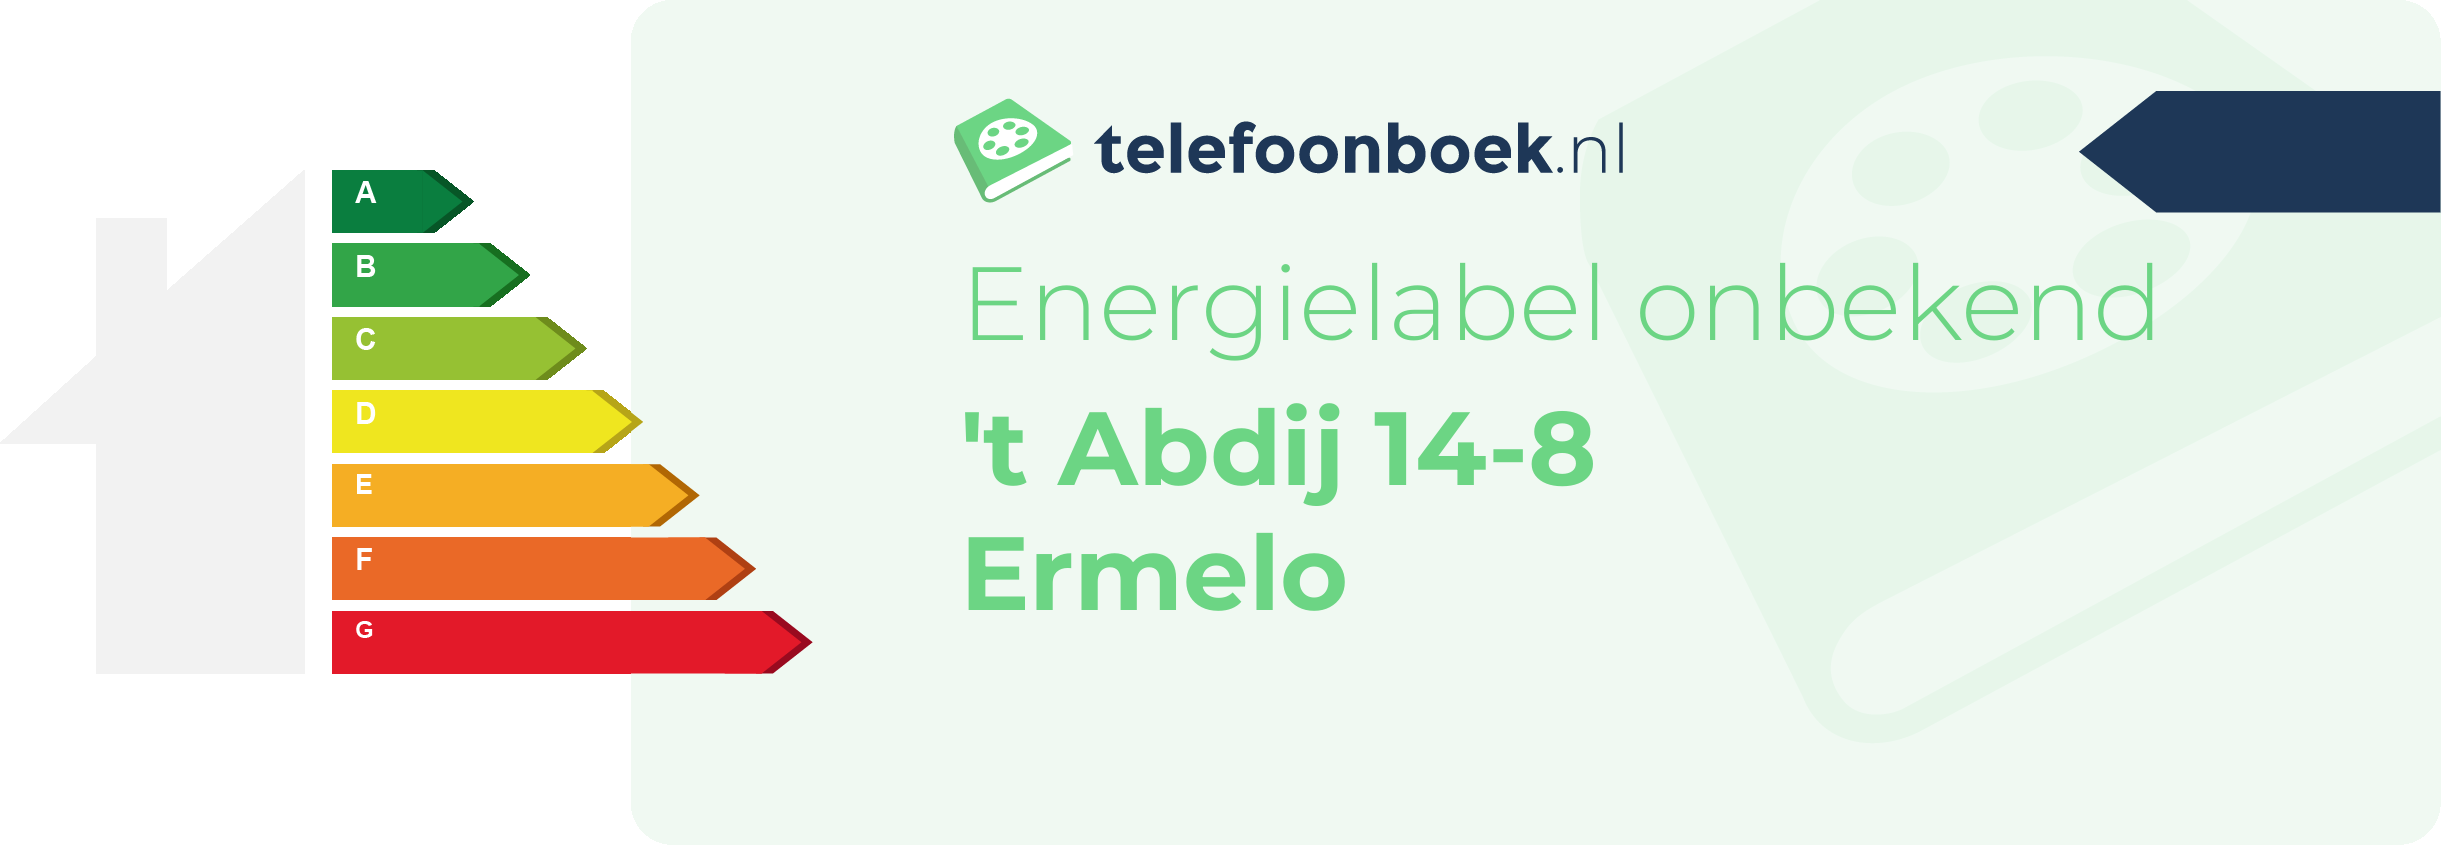 Energielabel 't Abdij 14-8 Ermelo